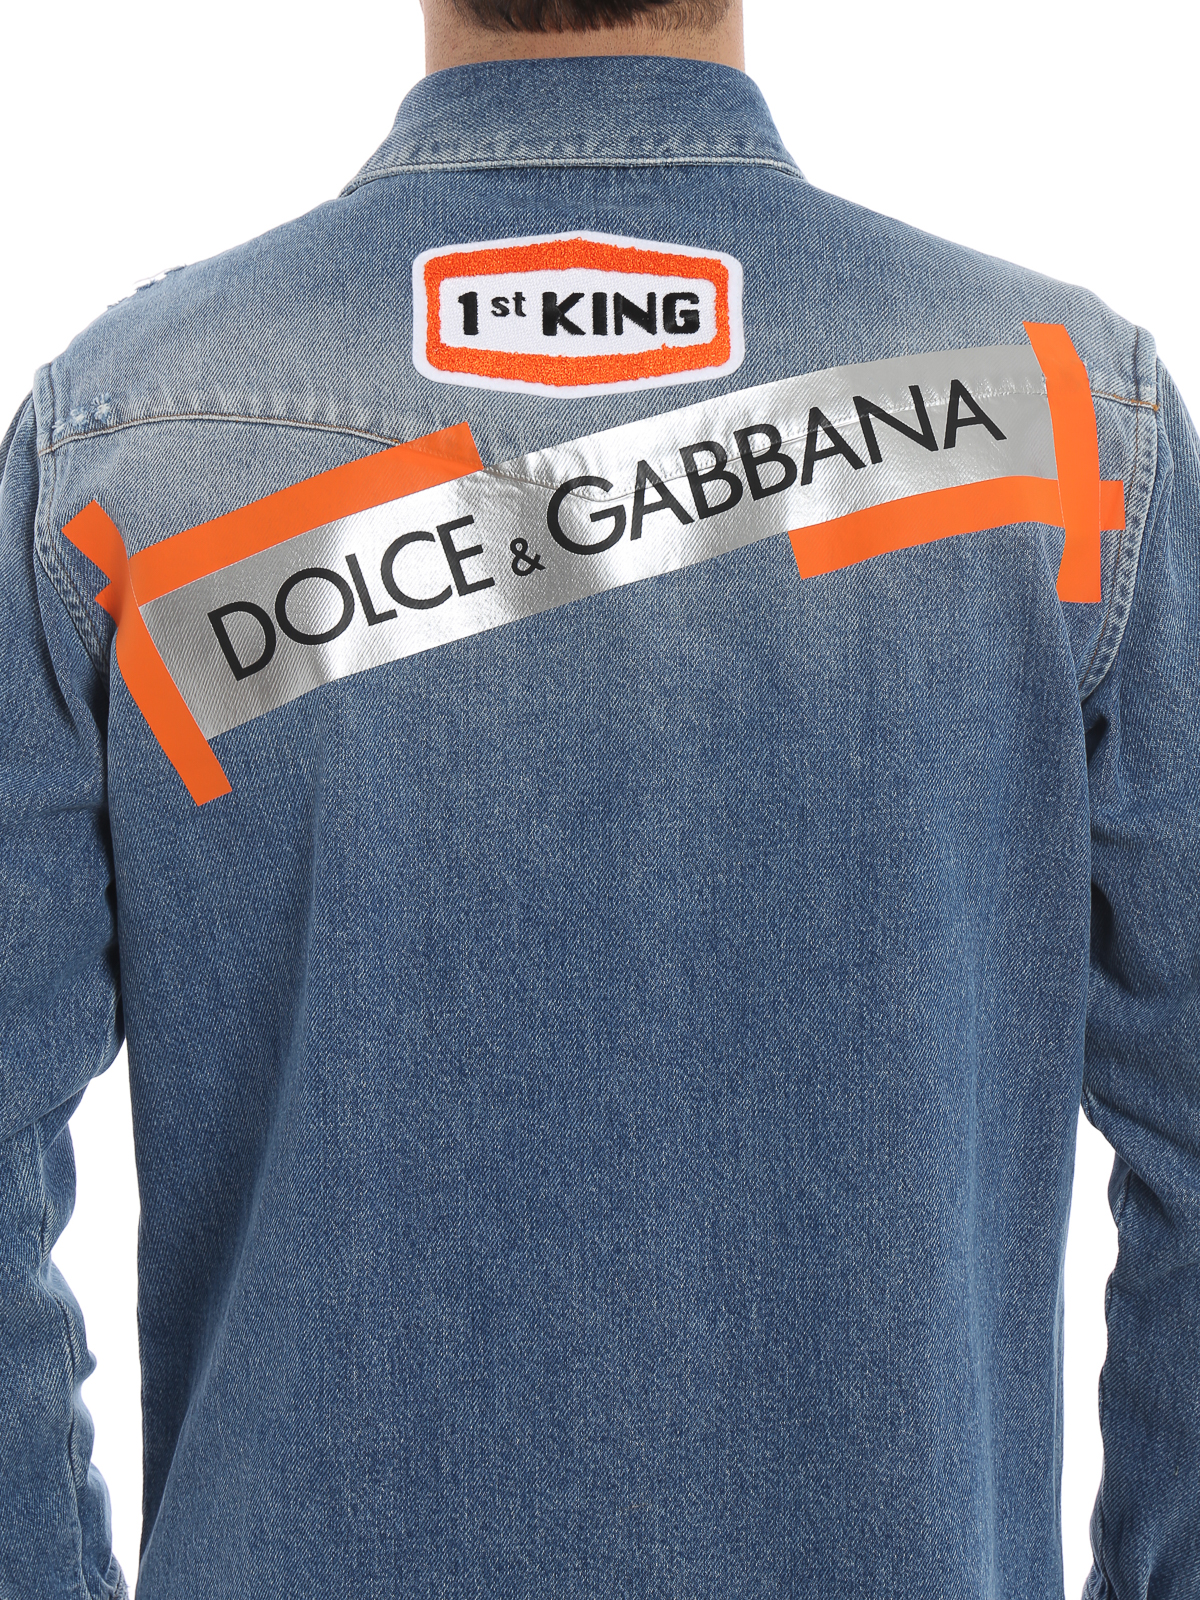 dolce and gabbana denim shirt